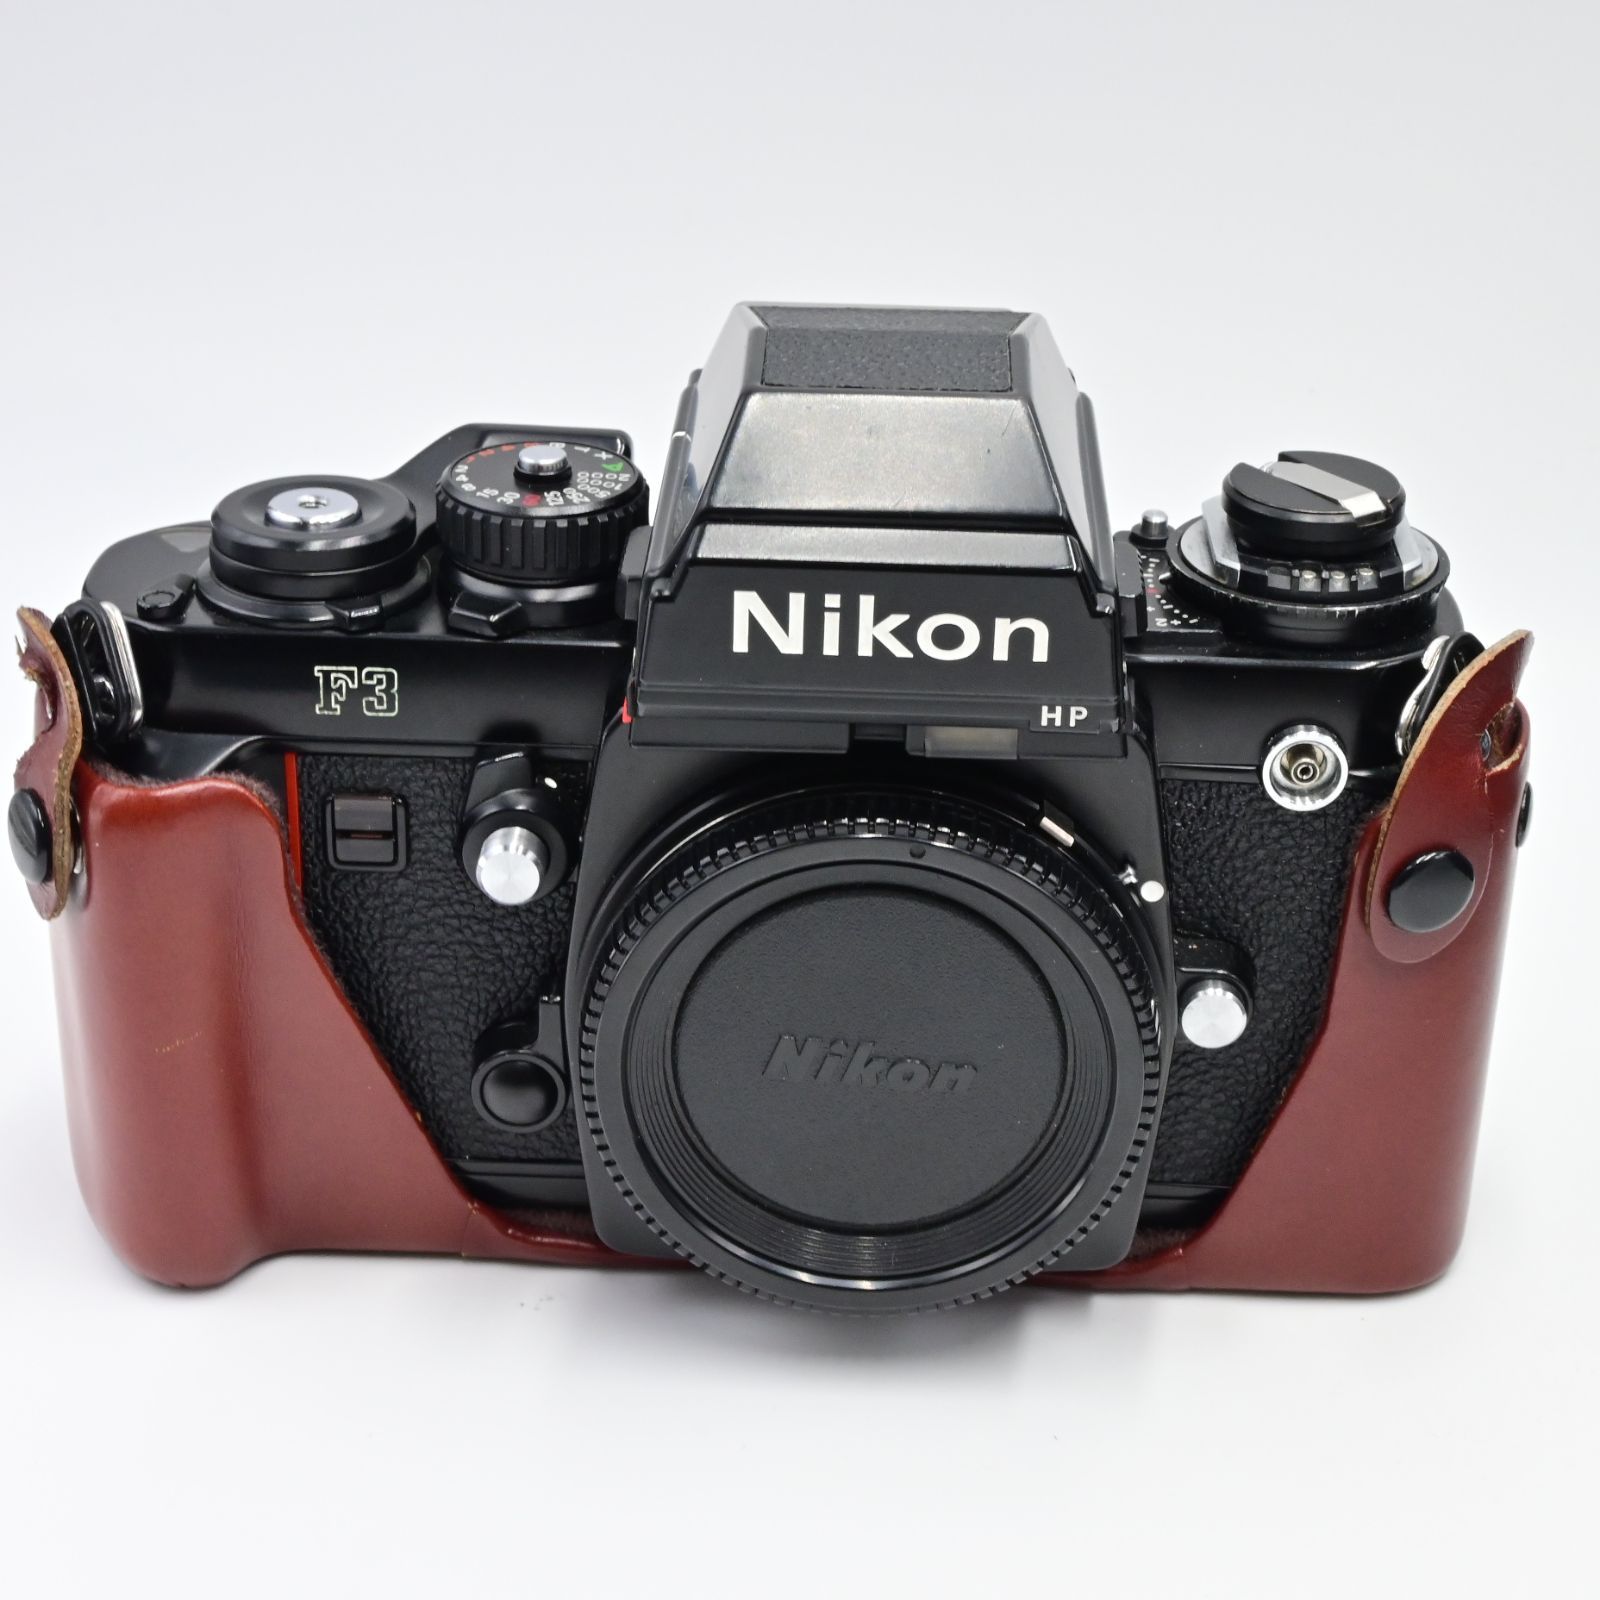 Nikon ニコン F3 HP ボディ - グッチーカメラ - メルカリ